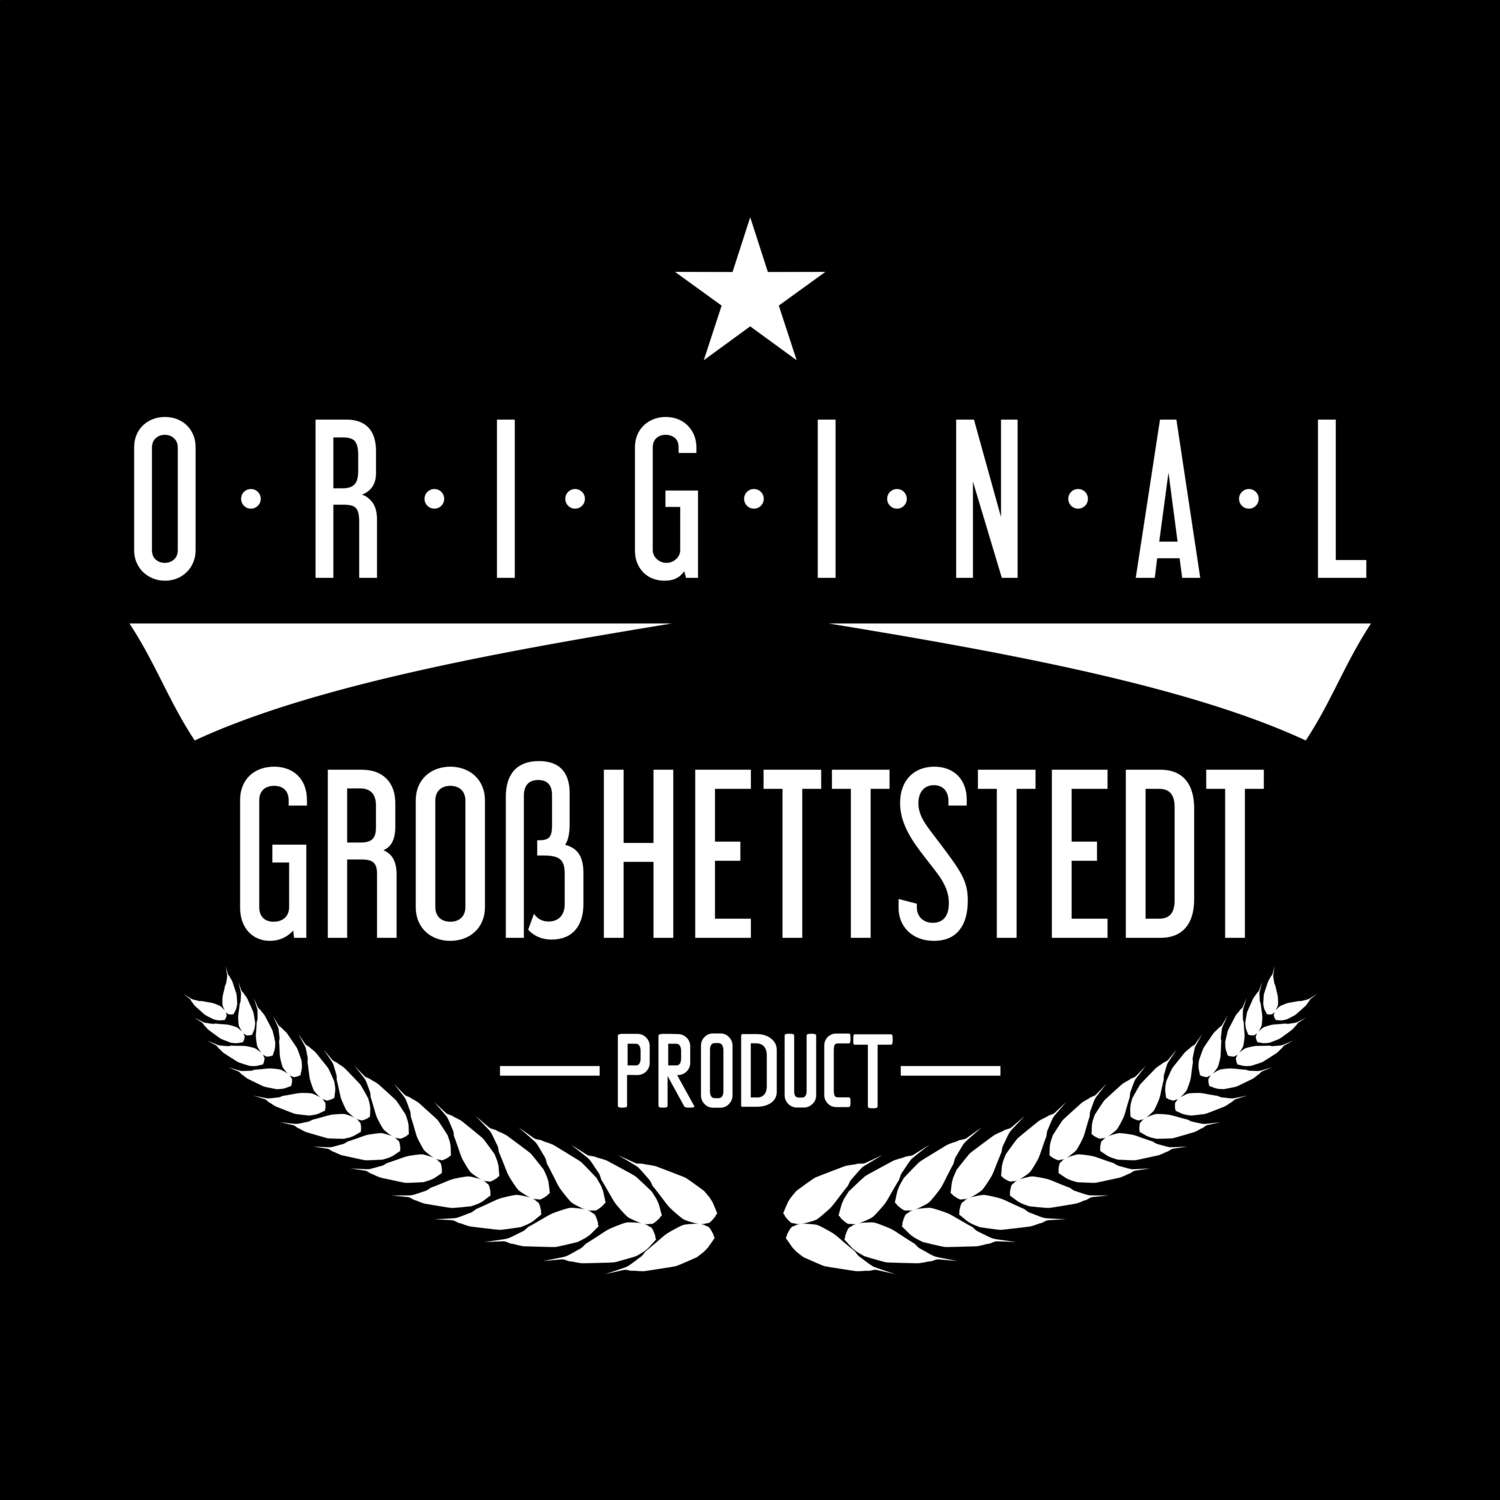 Großhettstedt T-Shirt »Original Product«